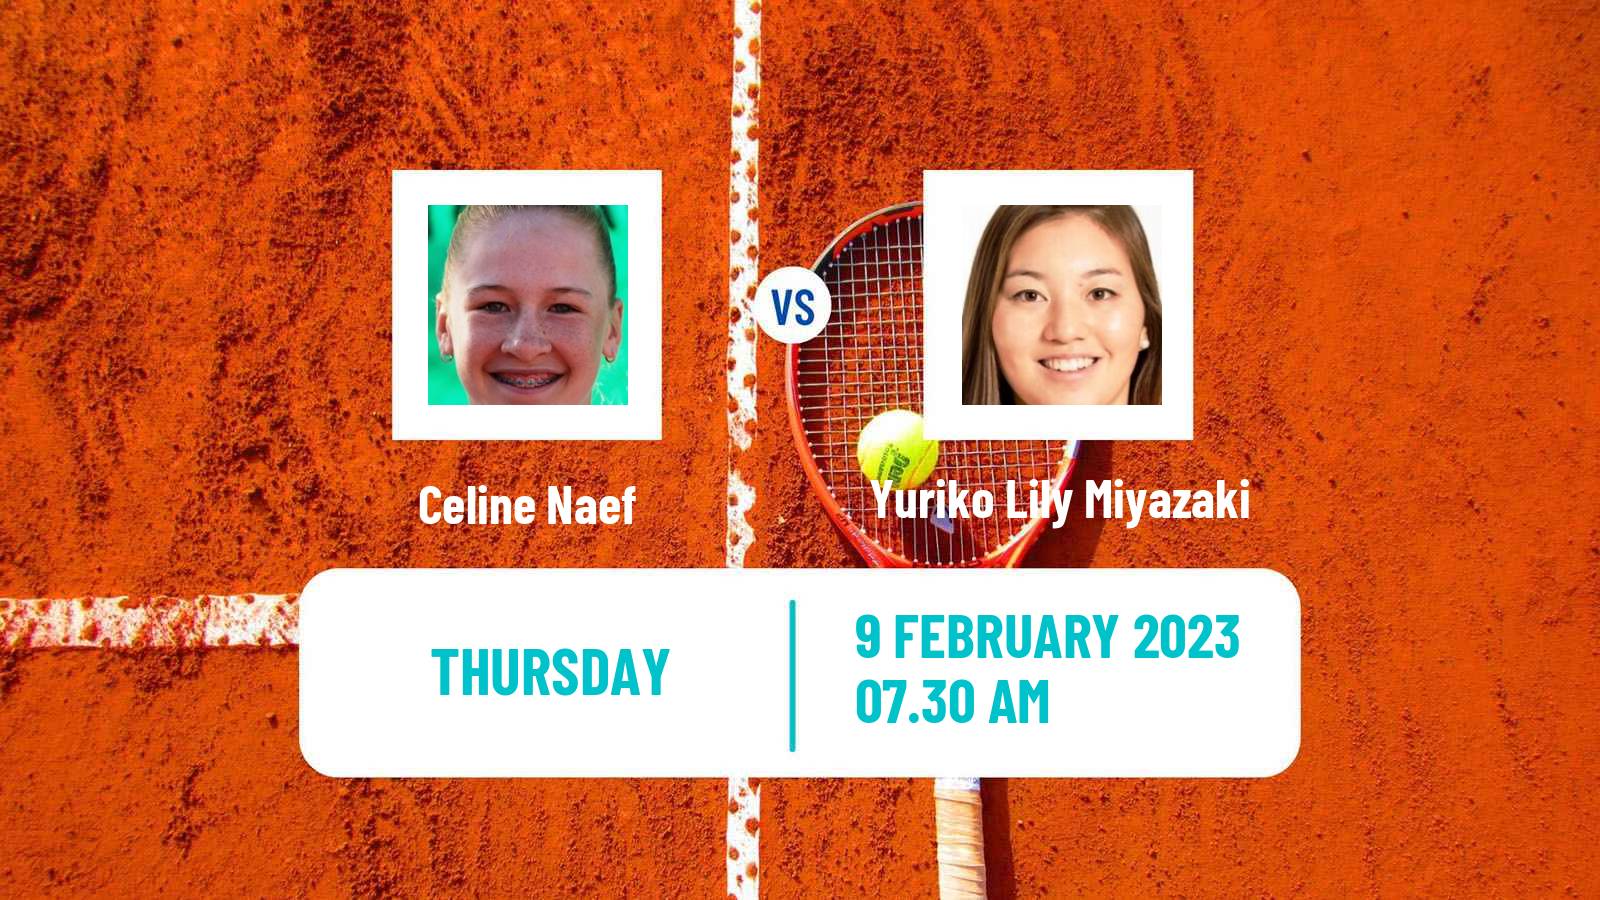 Tennis ITF Tournaments Celine Naef - Yuriko Lily Miyazaki